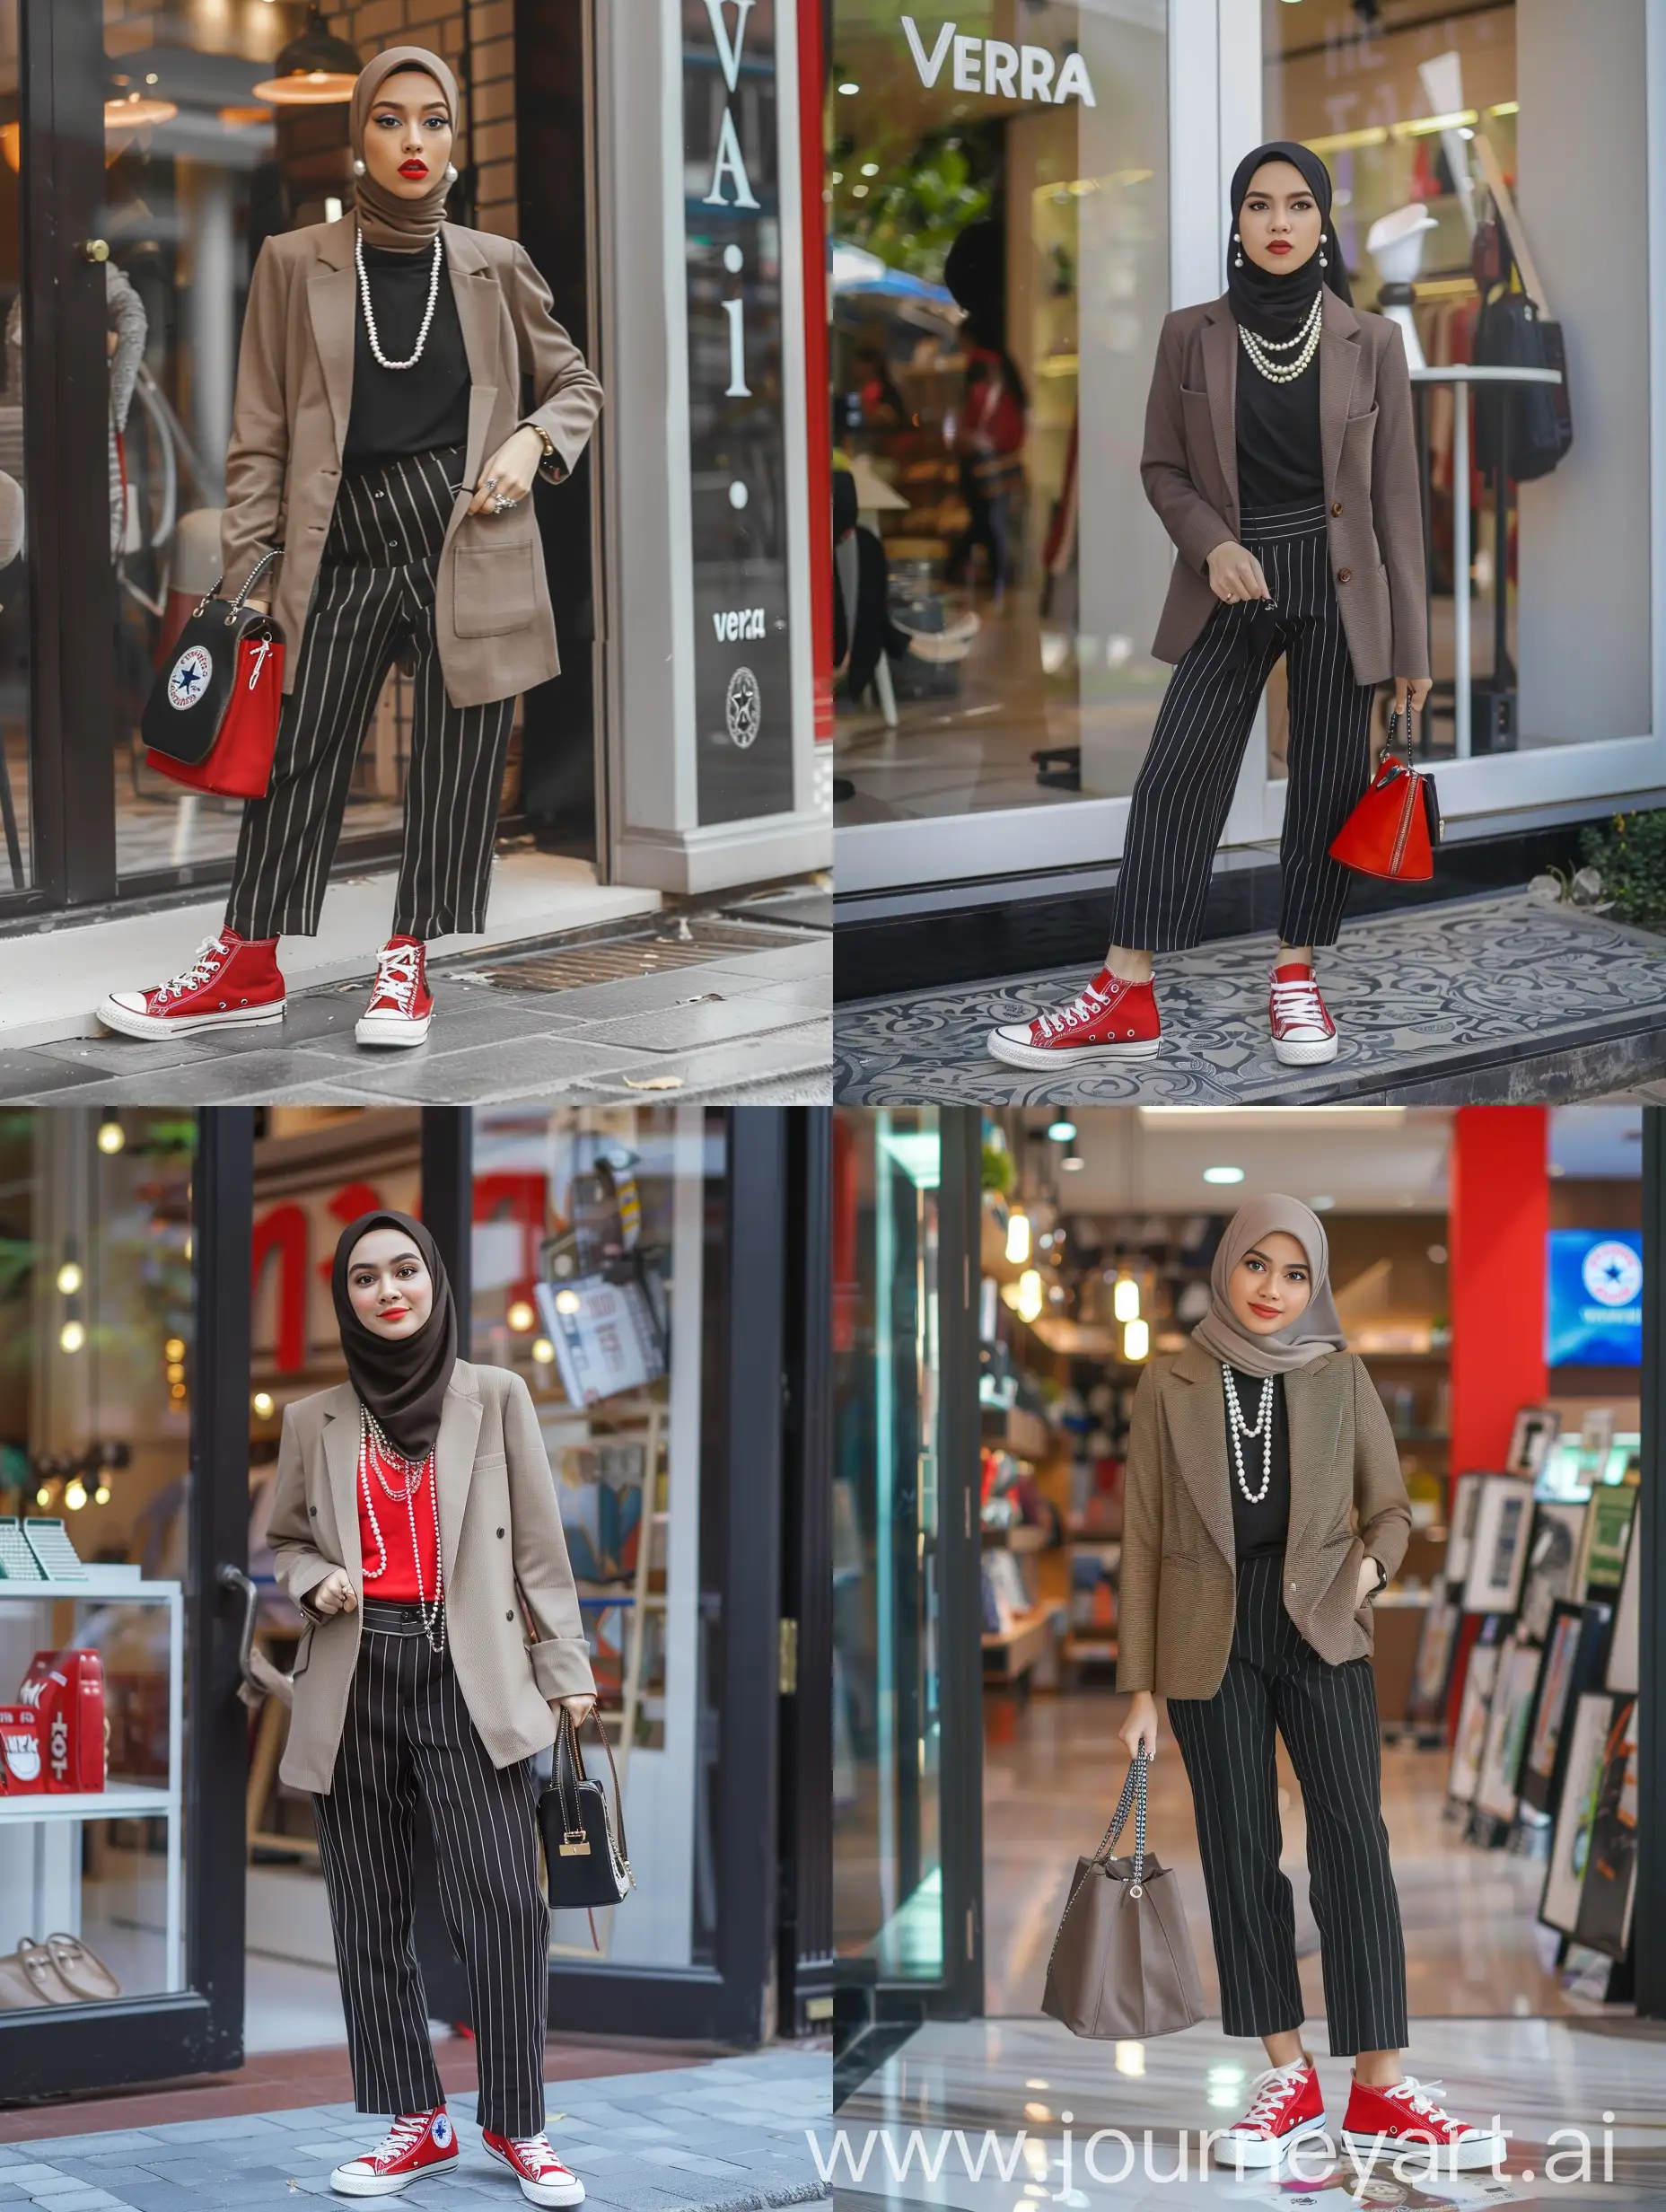 Stylish-Indonesian-Woman-with-Handbag-at-Vera-Shop